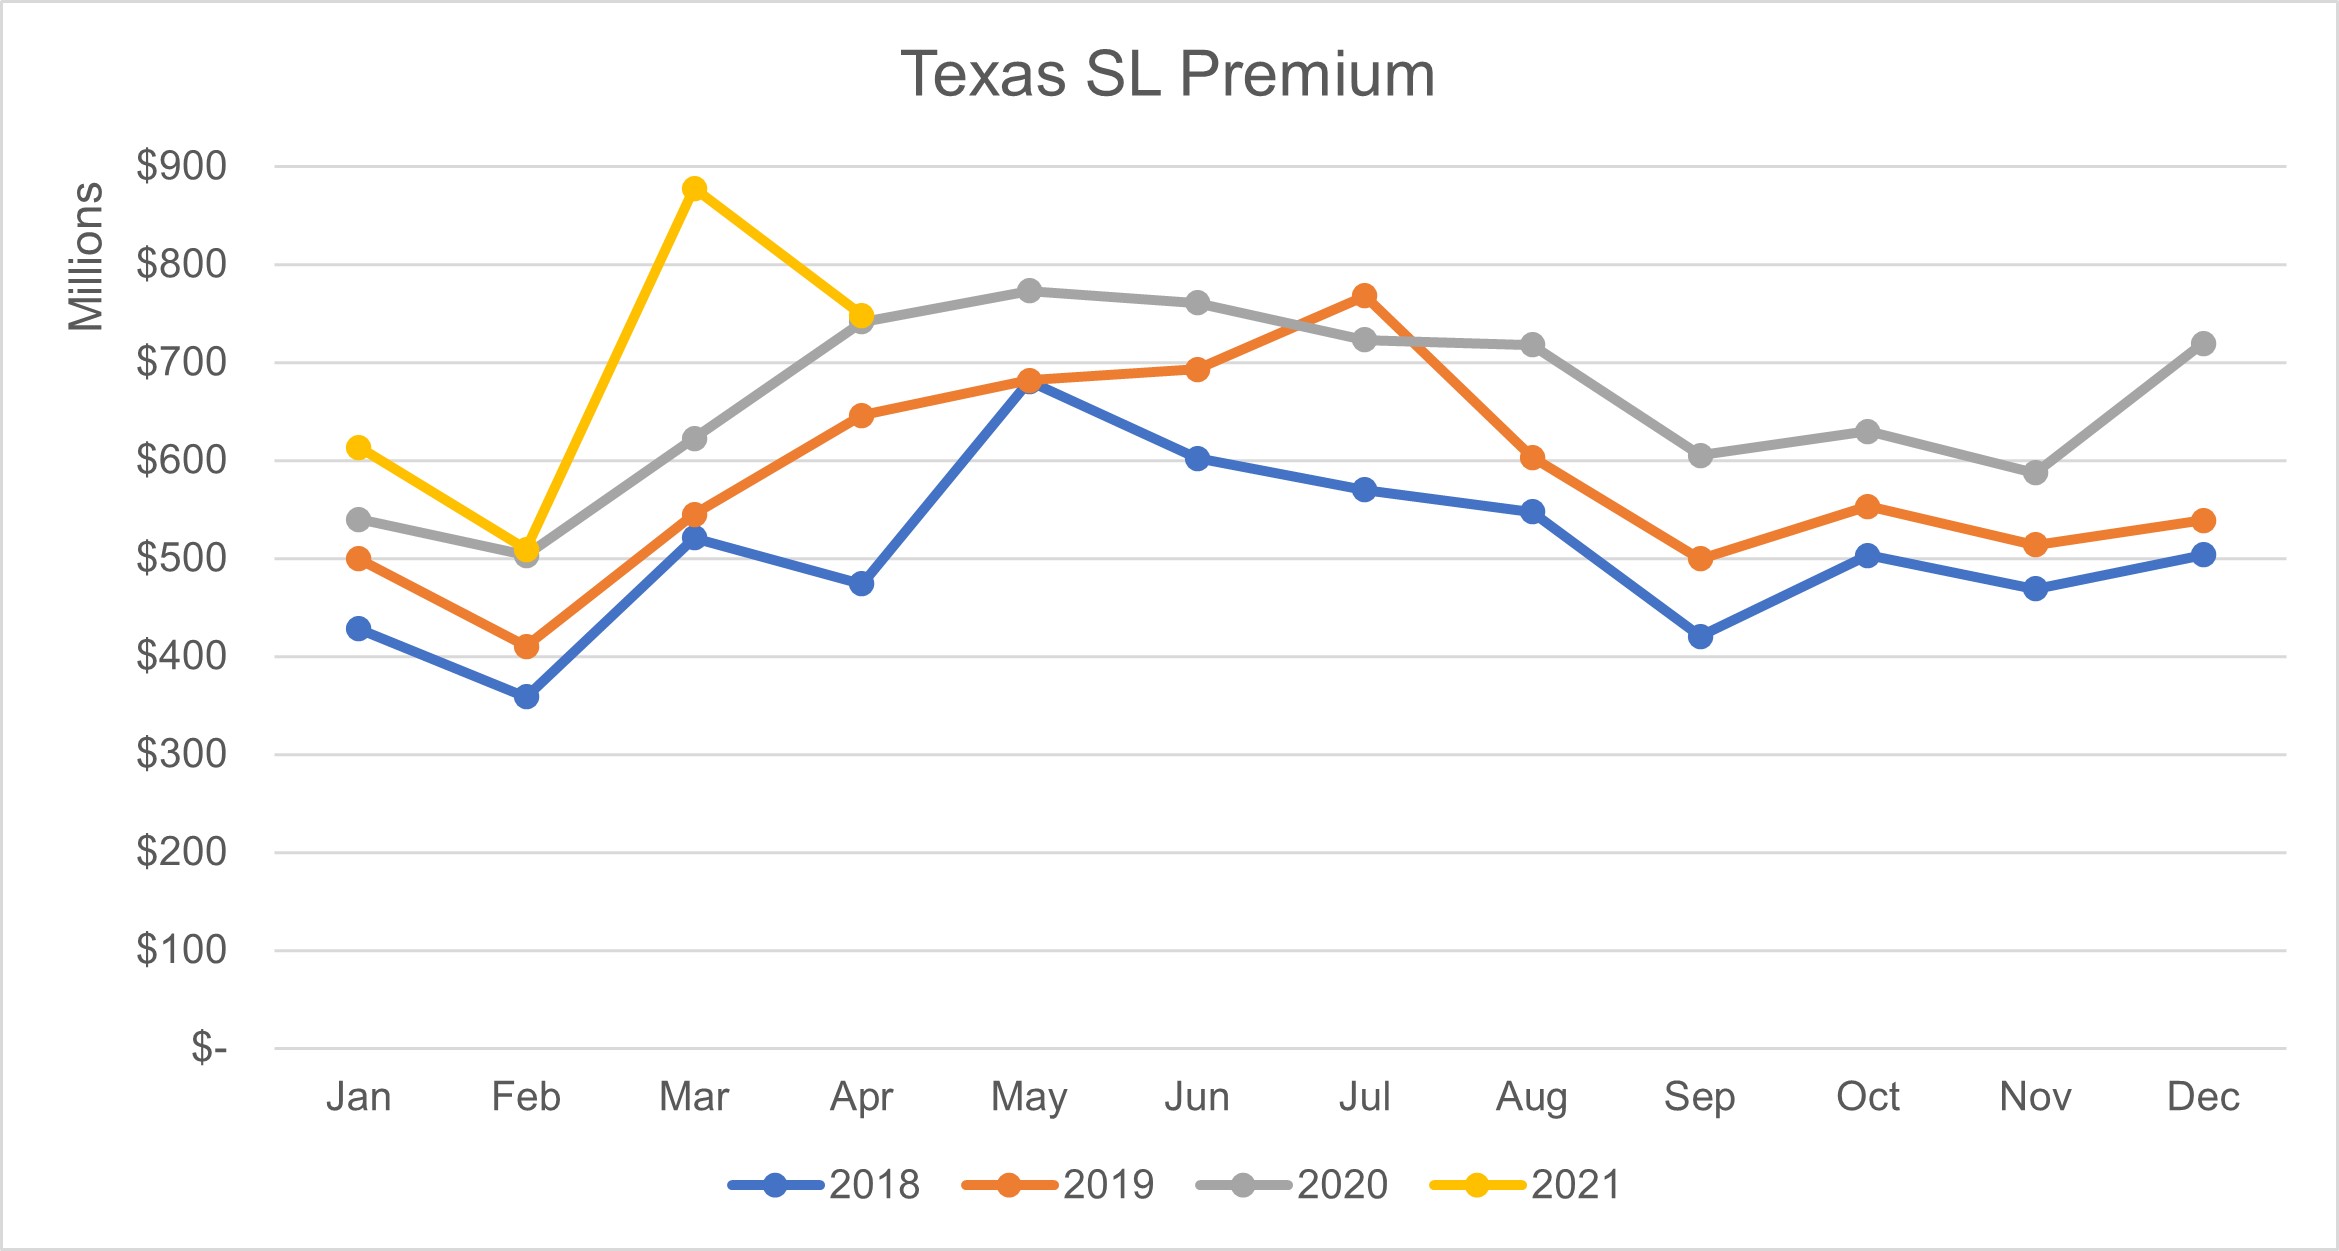 Texas SL Premium